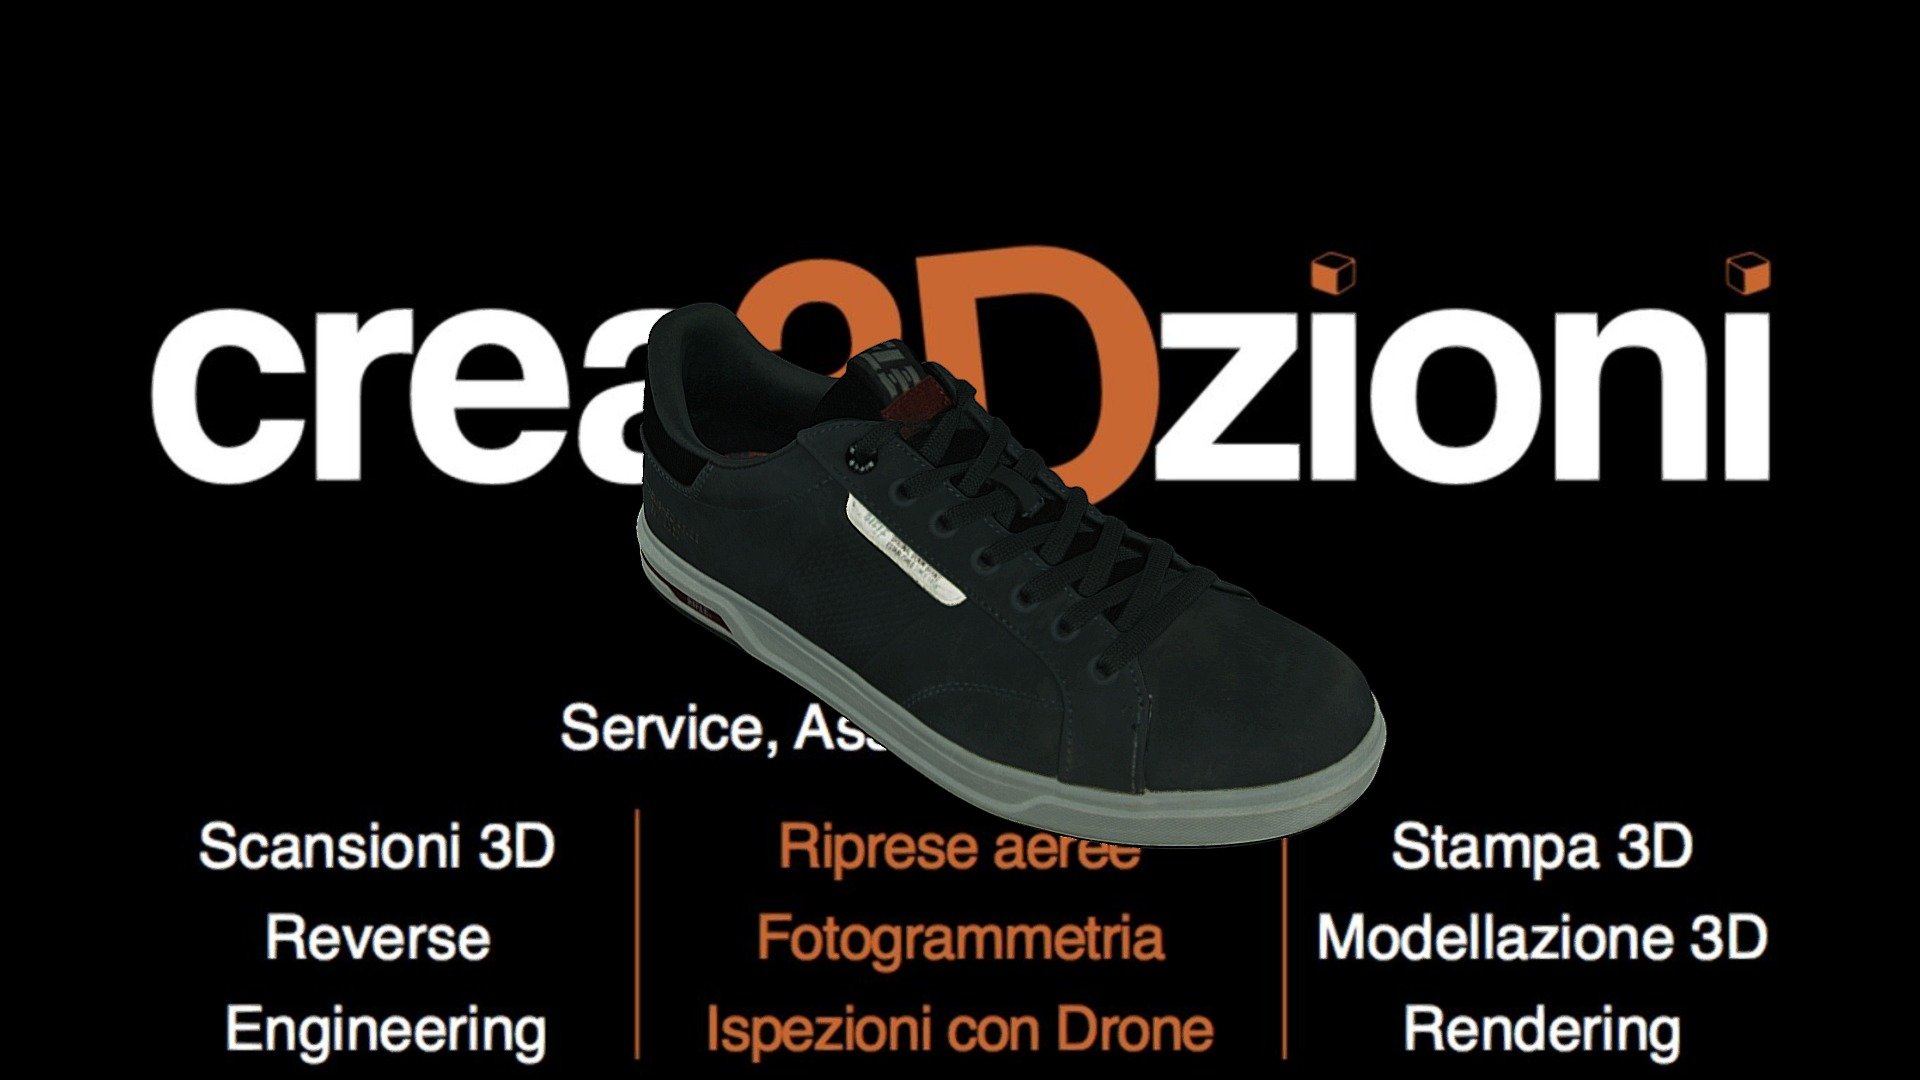 Scarpa Sneakers - 3D model by Creazioni3D 3d model